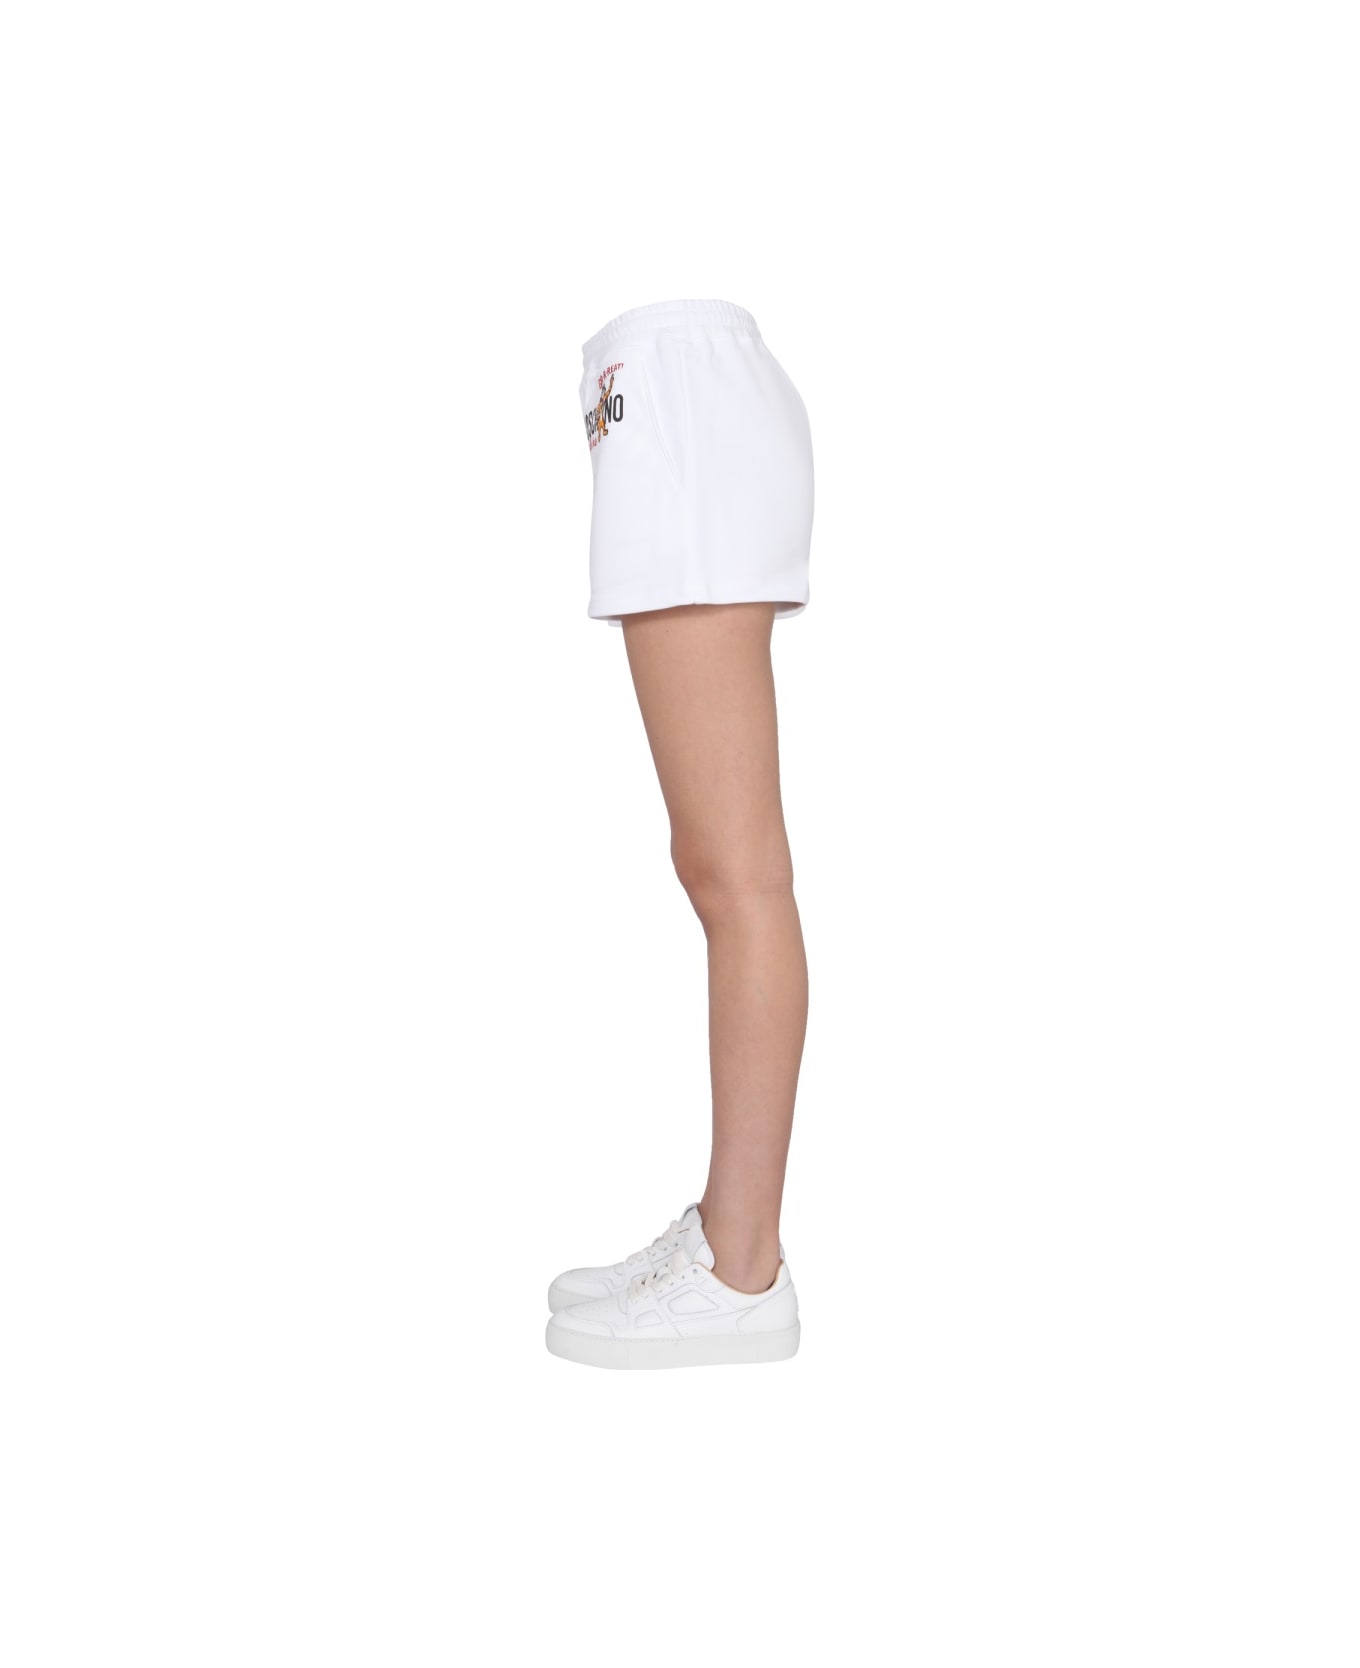 Moschino X Kellogg's Shorts - WHITE ショートパンツ